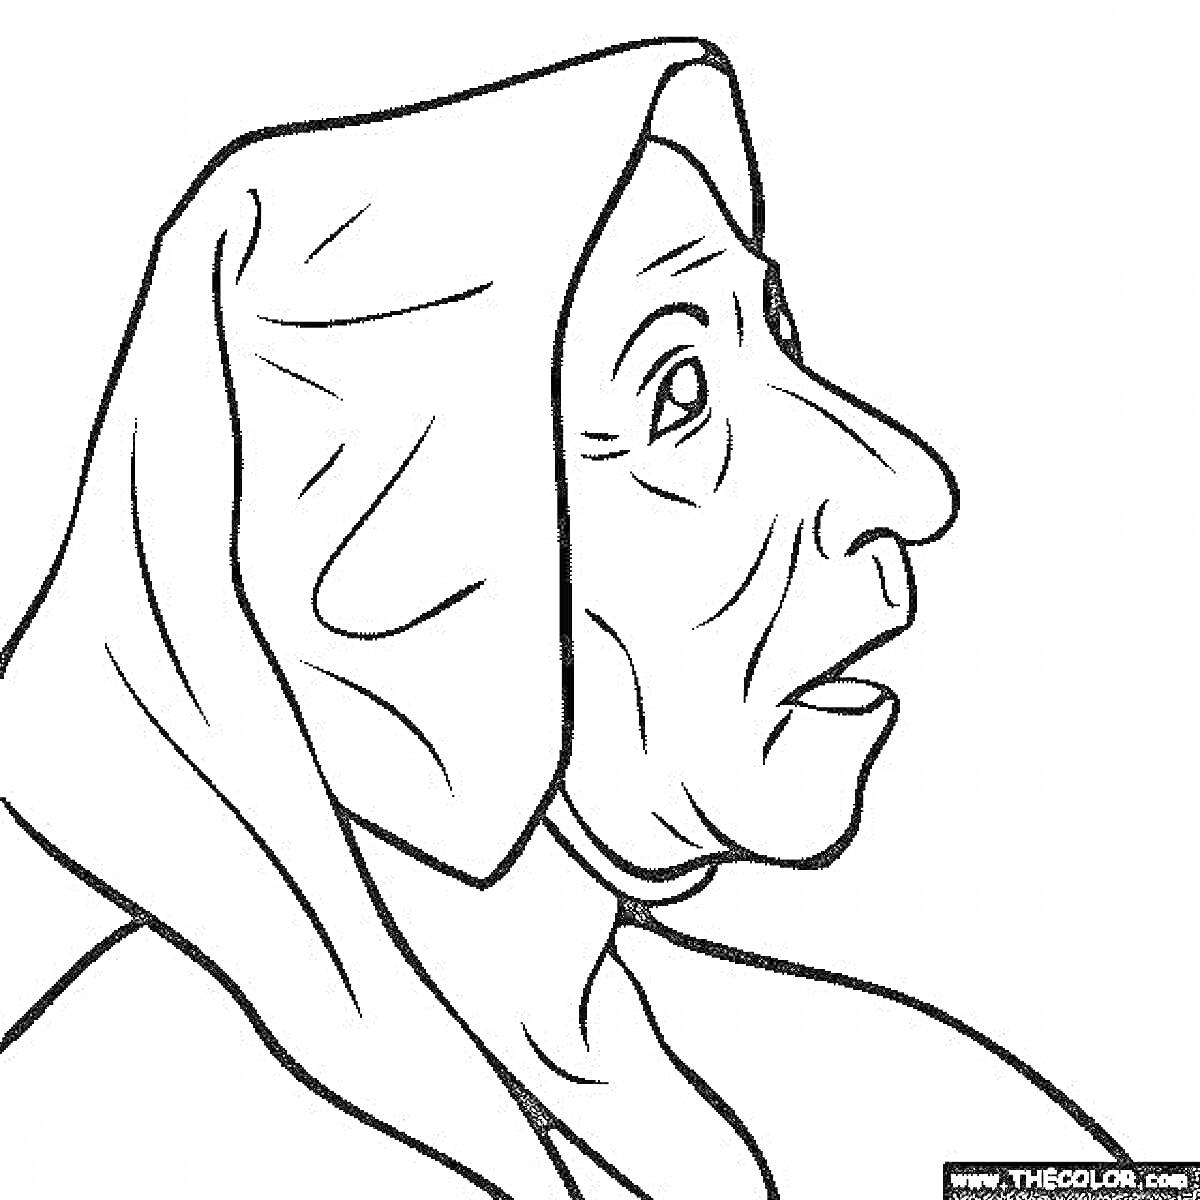 Бабка Гренни в накидке, профильное изображение с морщинами на лице